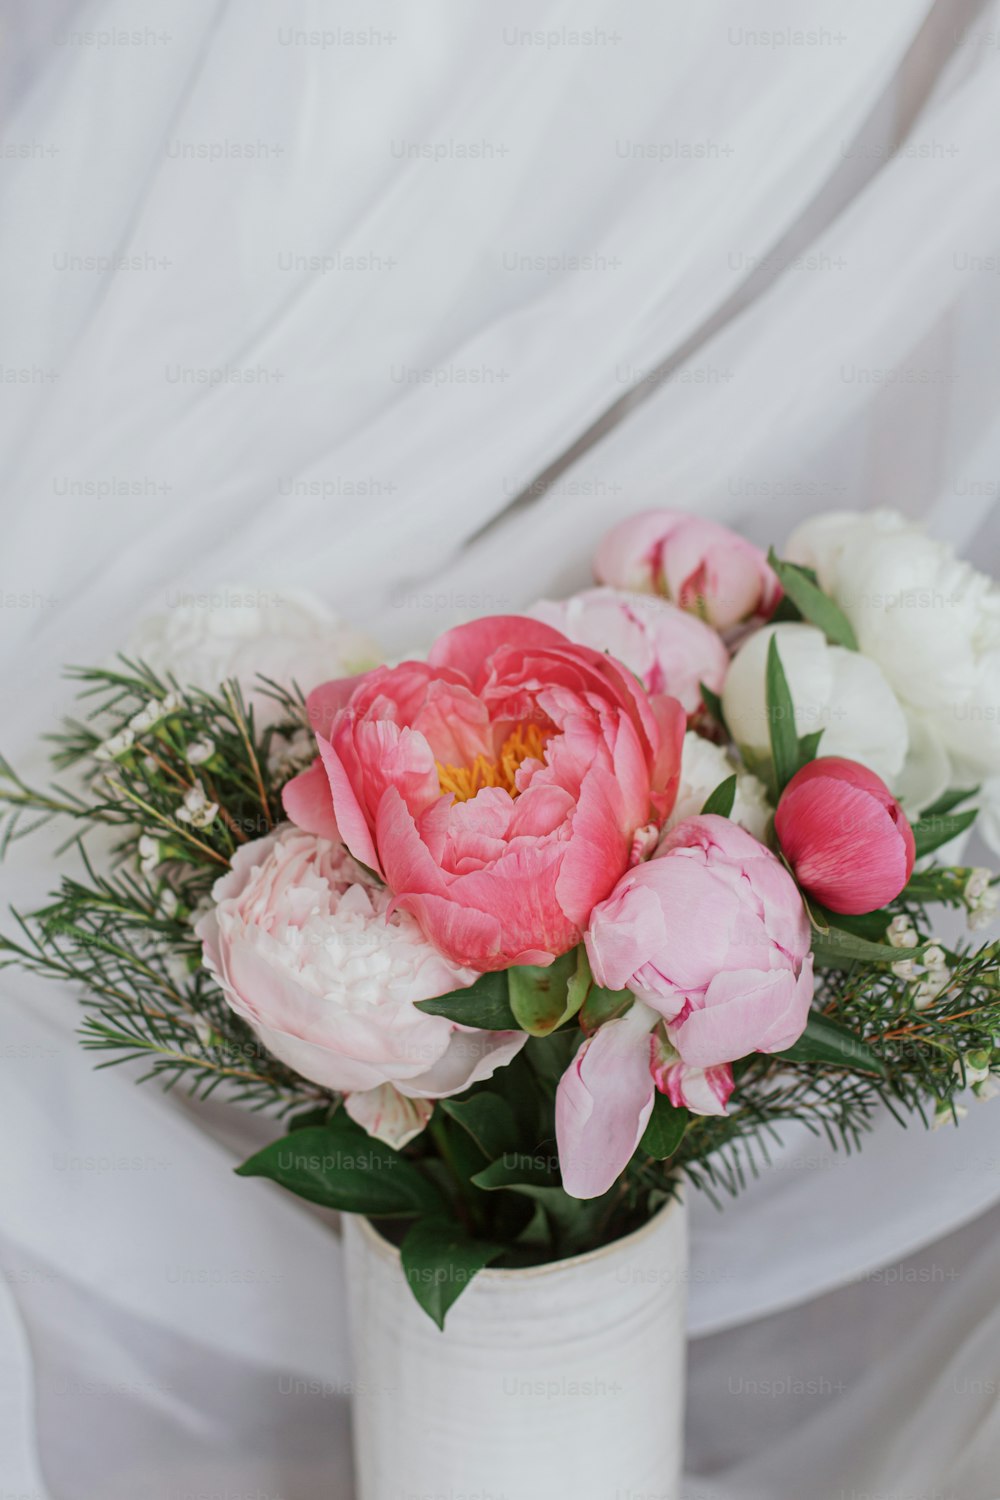 Beau bouquet de pivoines élégant sur fond de tissu blanc doux. Fleurs de pivoine rose et blanche dans un vase en céramique sur fond rustique pastel. Bonne fête des mères. Bouquet de mariée moderne